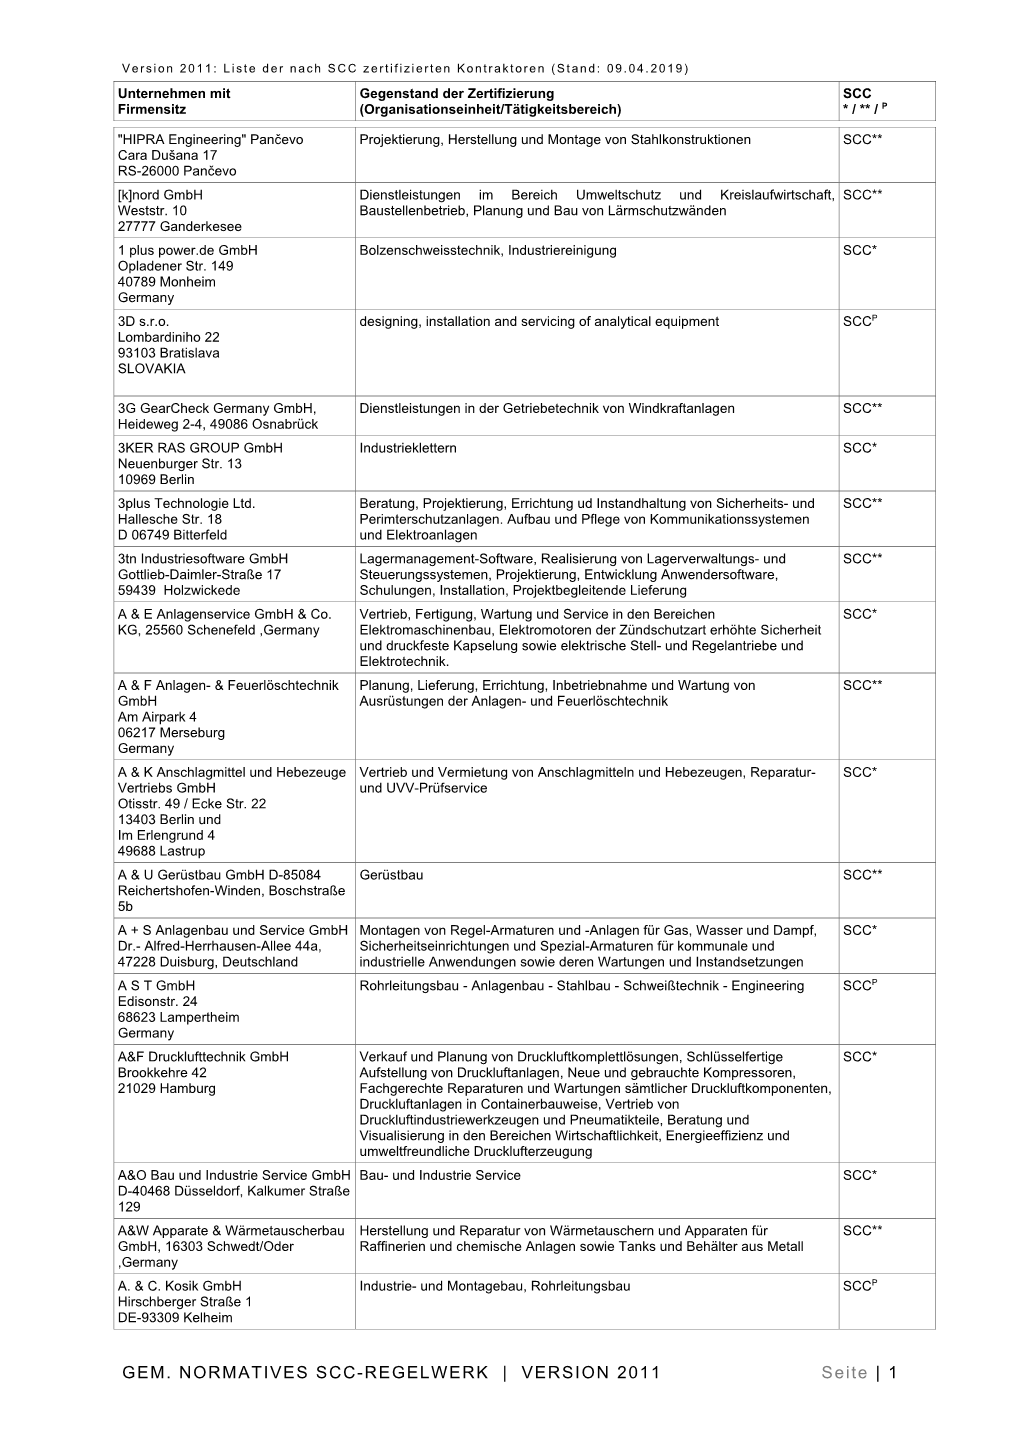 GEM. NORMATIVES SCC-REGELWERK | VERSION 2011 Seite | 1 Version 2011: Liste Der Nach SCC Zertifizierten Kontraktoren (Stand: 09.04.2019)